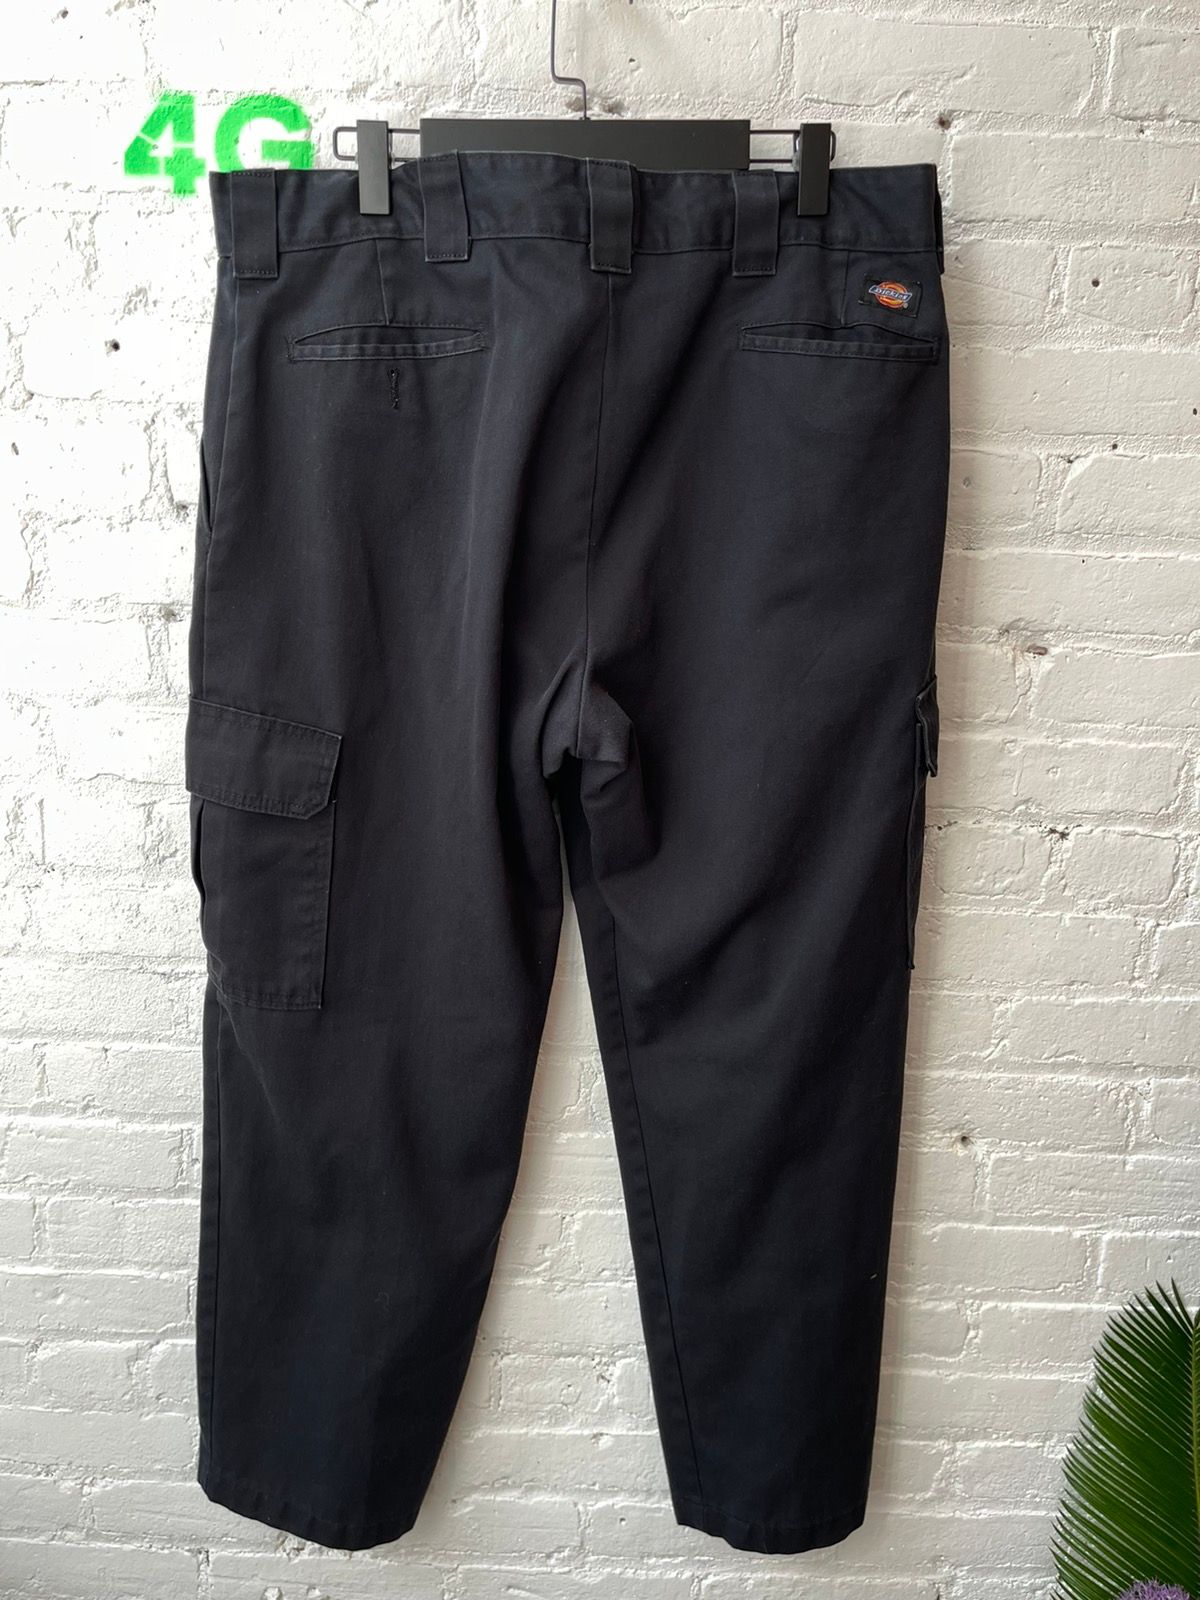 Vintage Dickies Baggy Cargo Jeans Pants 36 or 38